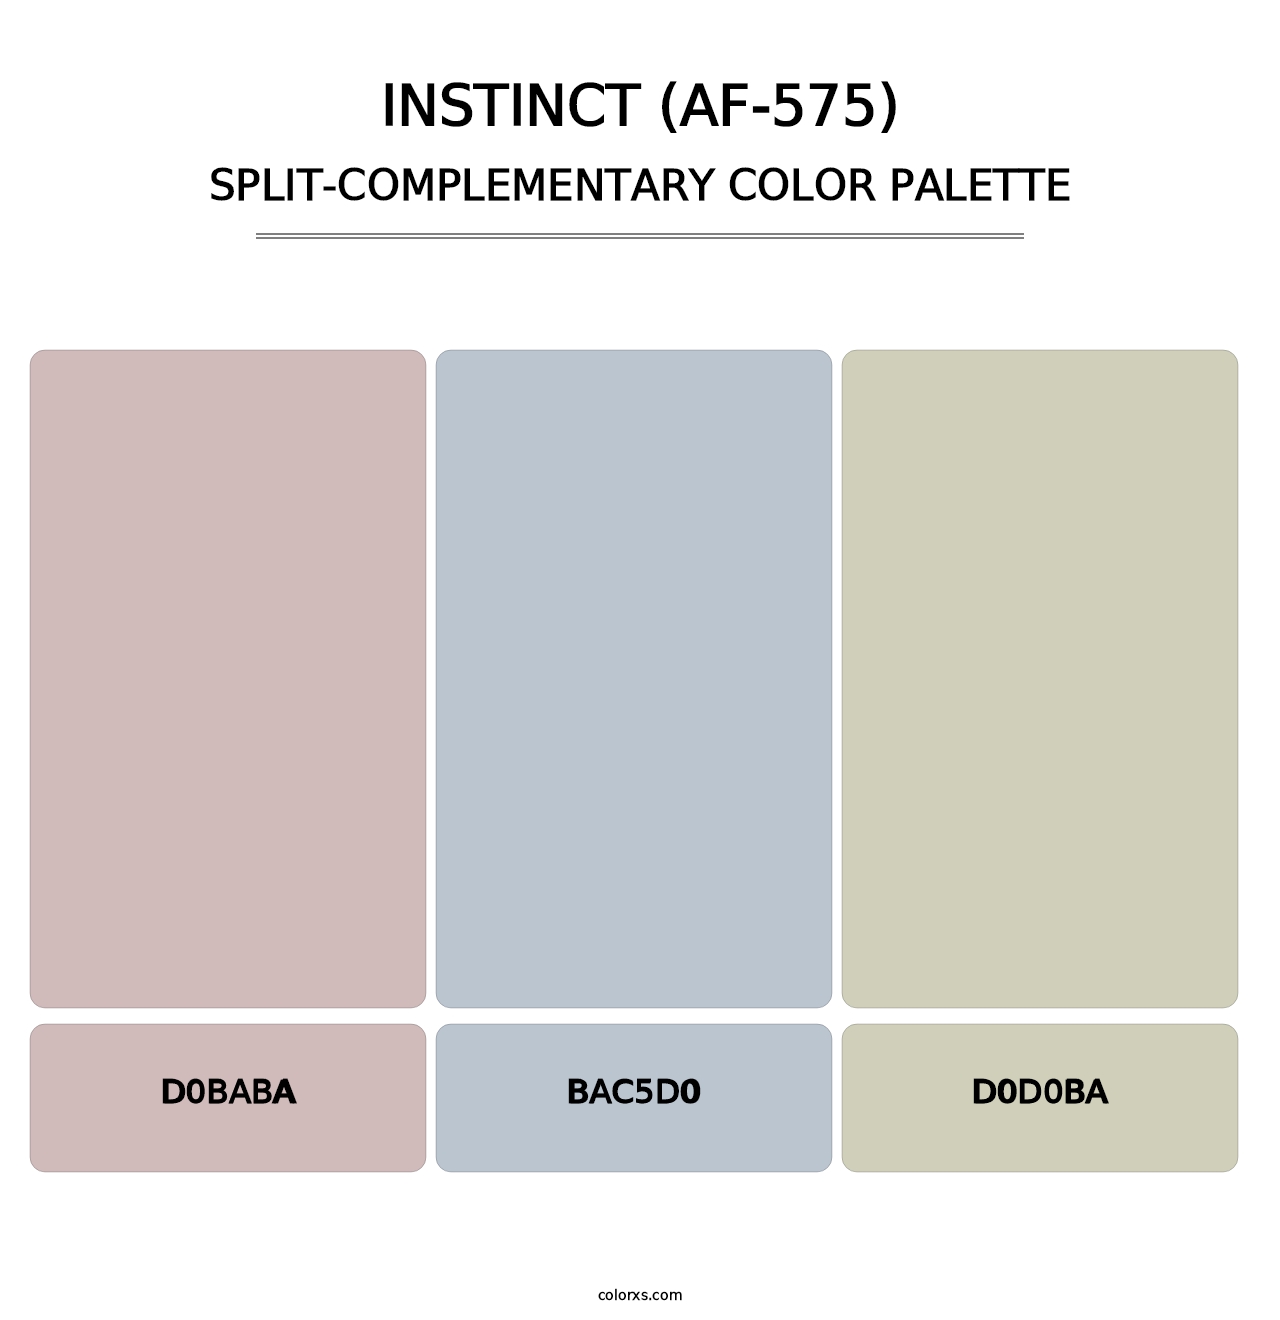 Instinct (AF-575) - Split-Complementary Color Palette